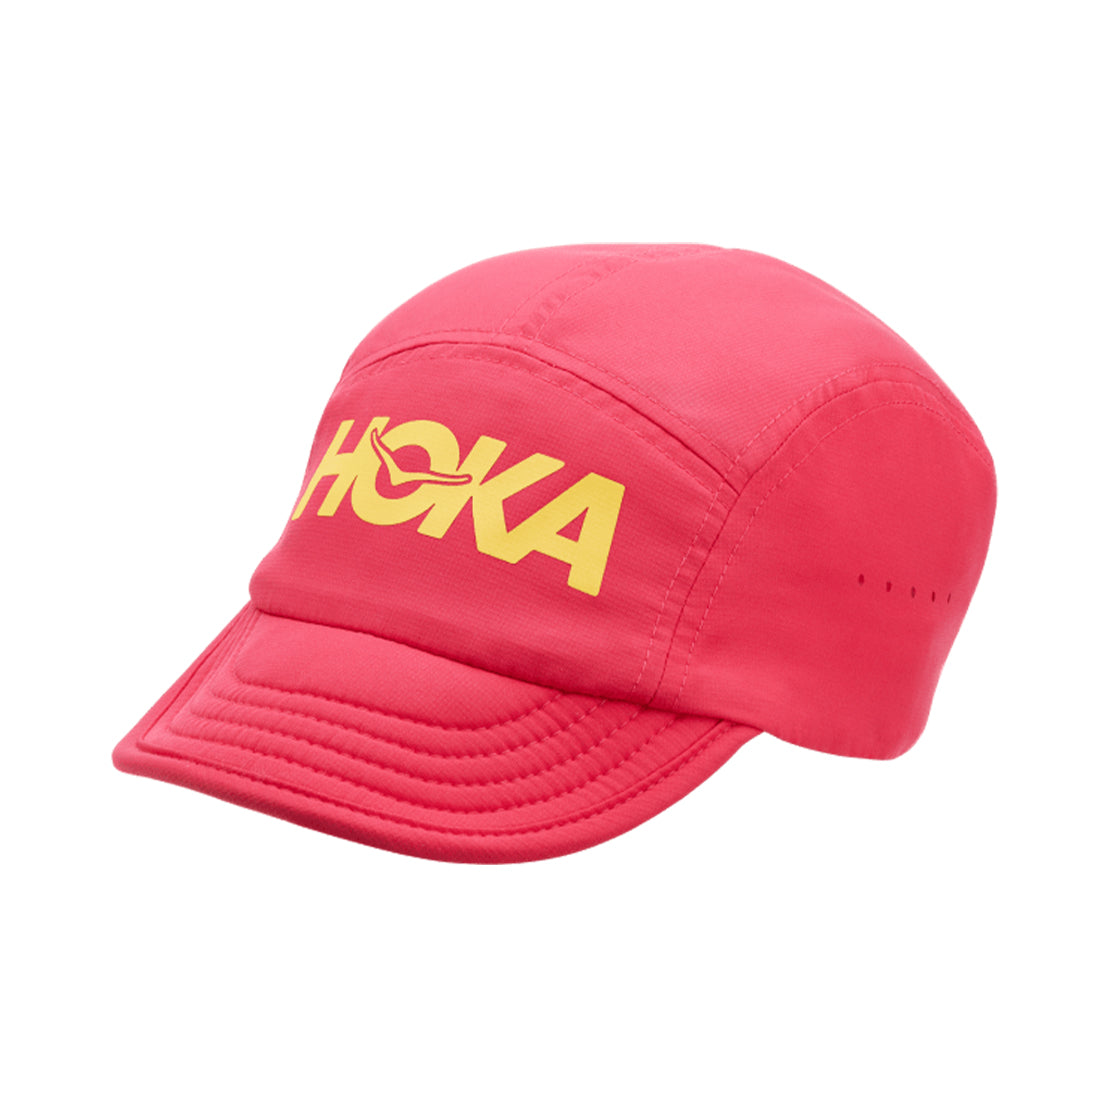 Hoka One One Packable Trail Hat Raspberry 1120458-RASP